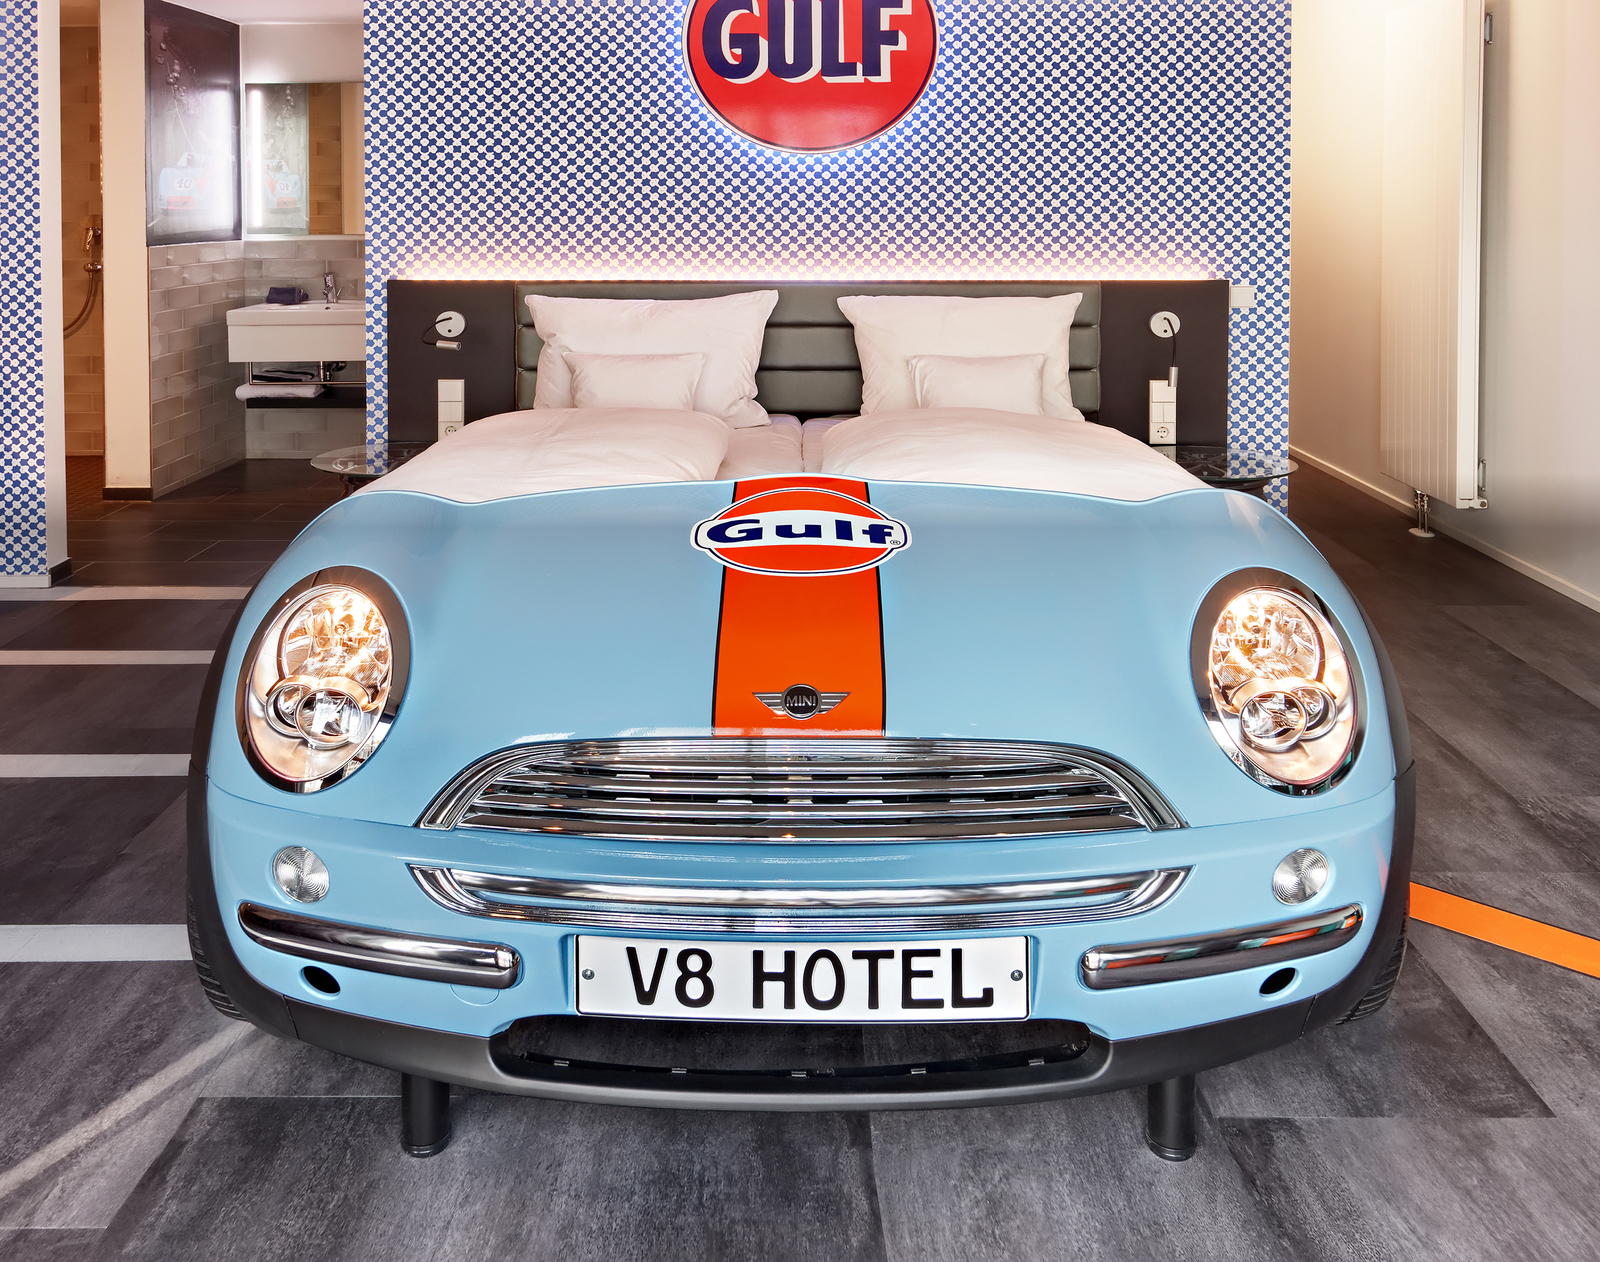 Hellblaues Autobett von Mini vor karierter Wand mit orangefarbenem Gulf-Logo im Autozimmer des V8 Hotels.